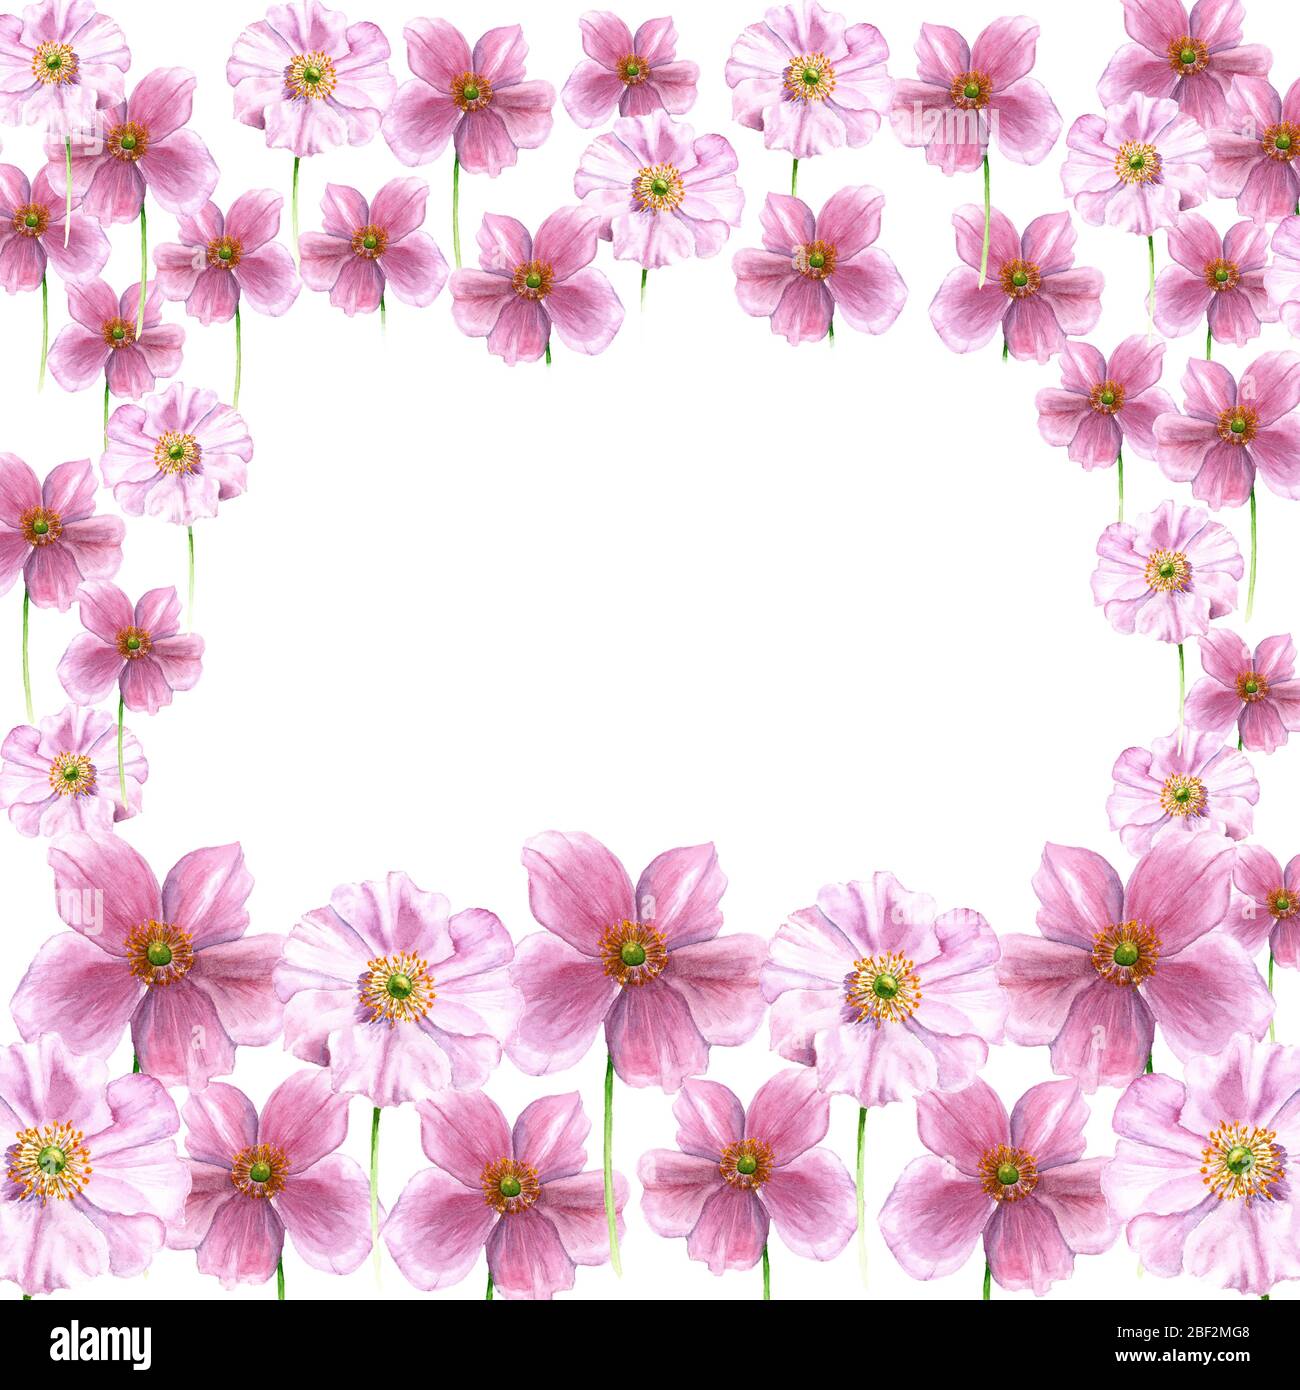 Cadre aquarelle à partir de fleurs d'anemone. Fleurs dessinées à la main isolées sur fond blanc. Élément floral artistique. Illustration Botanique Banque D'Images